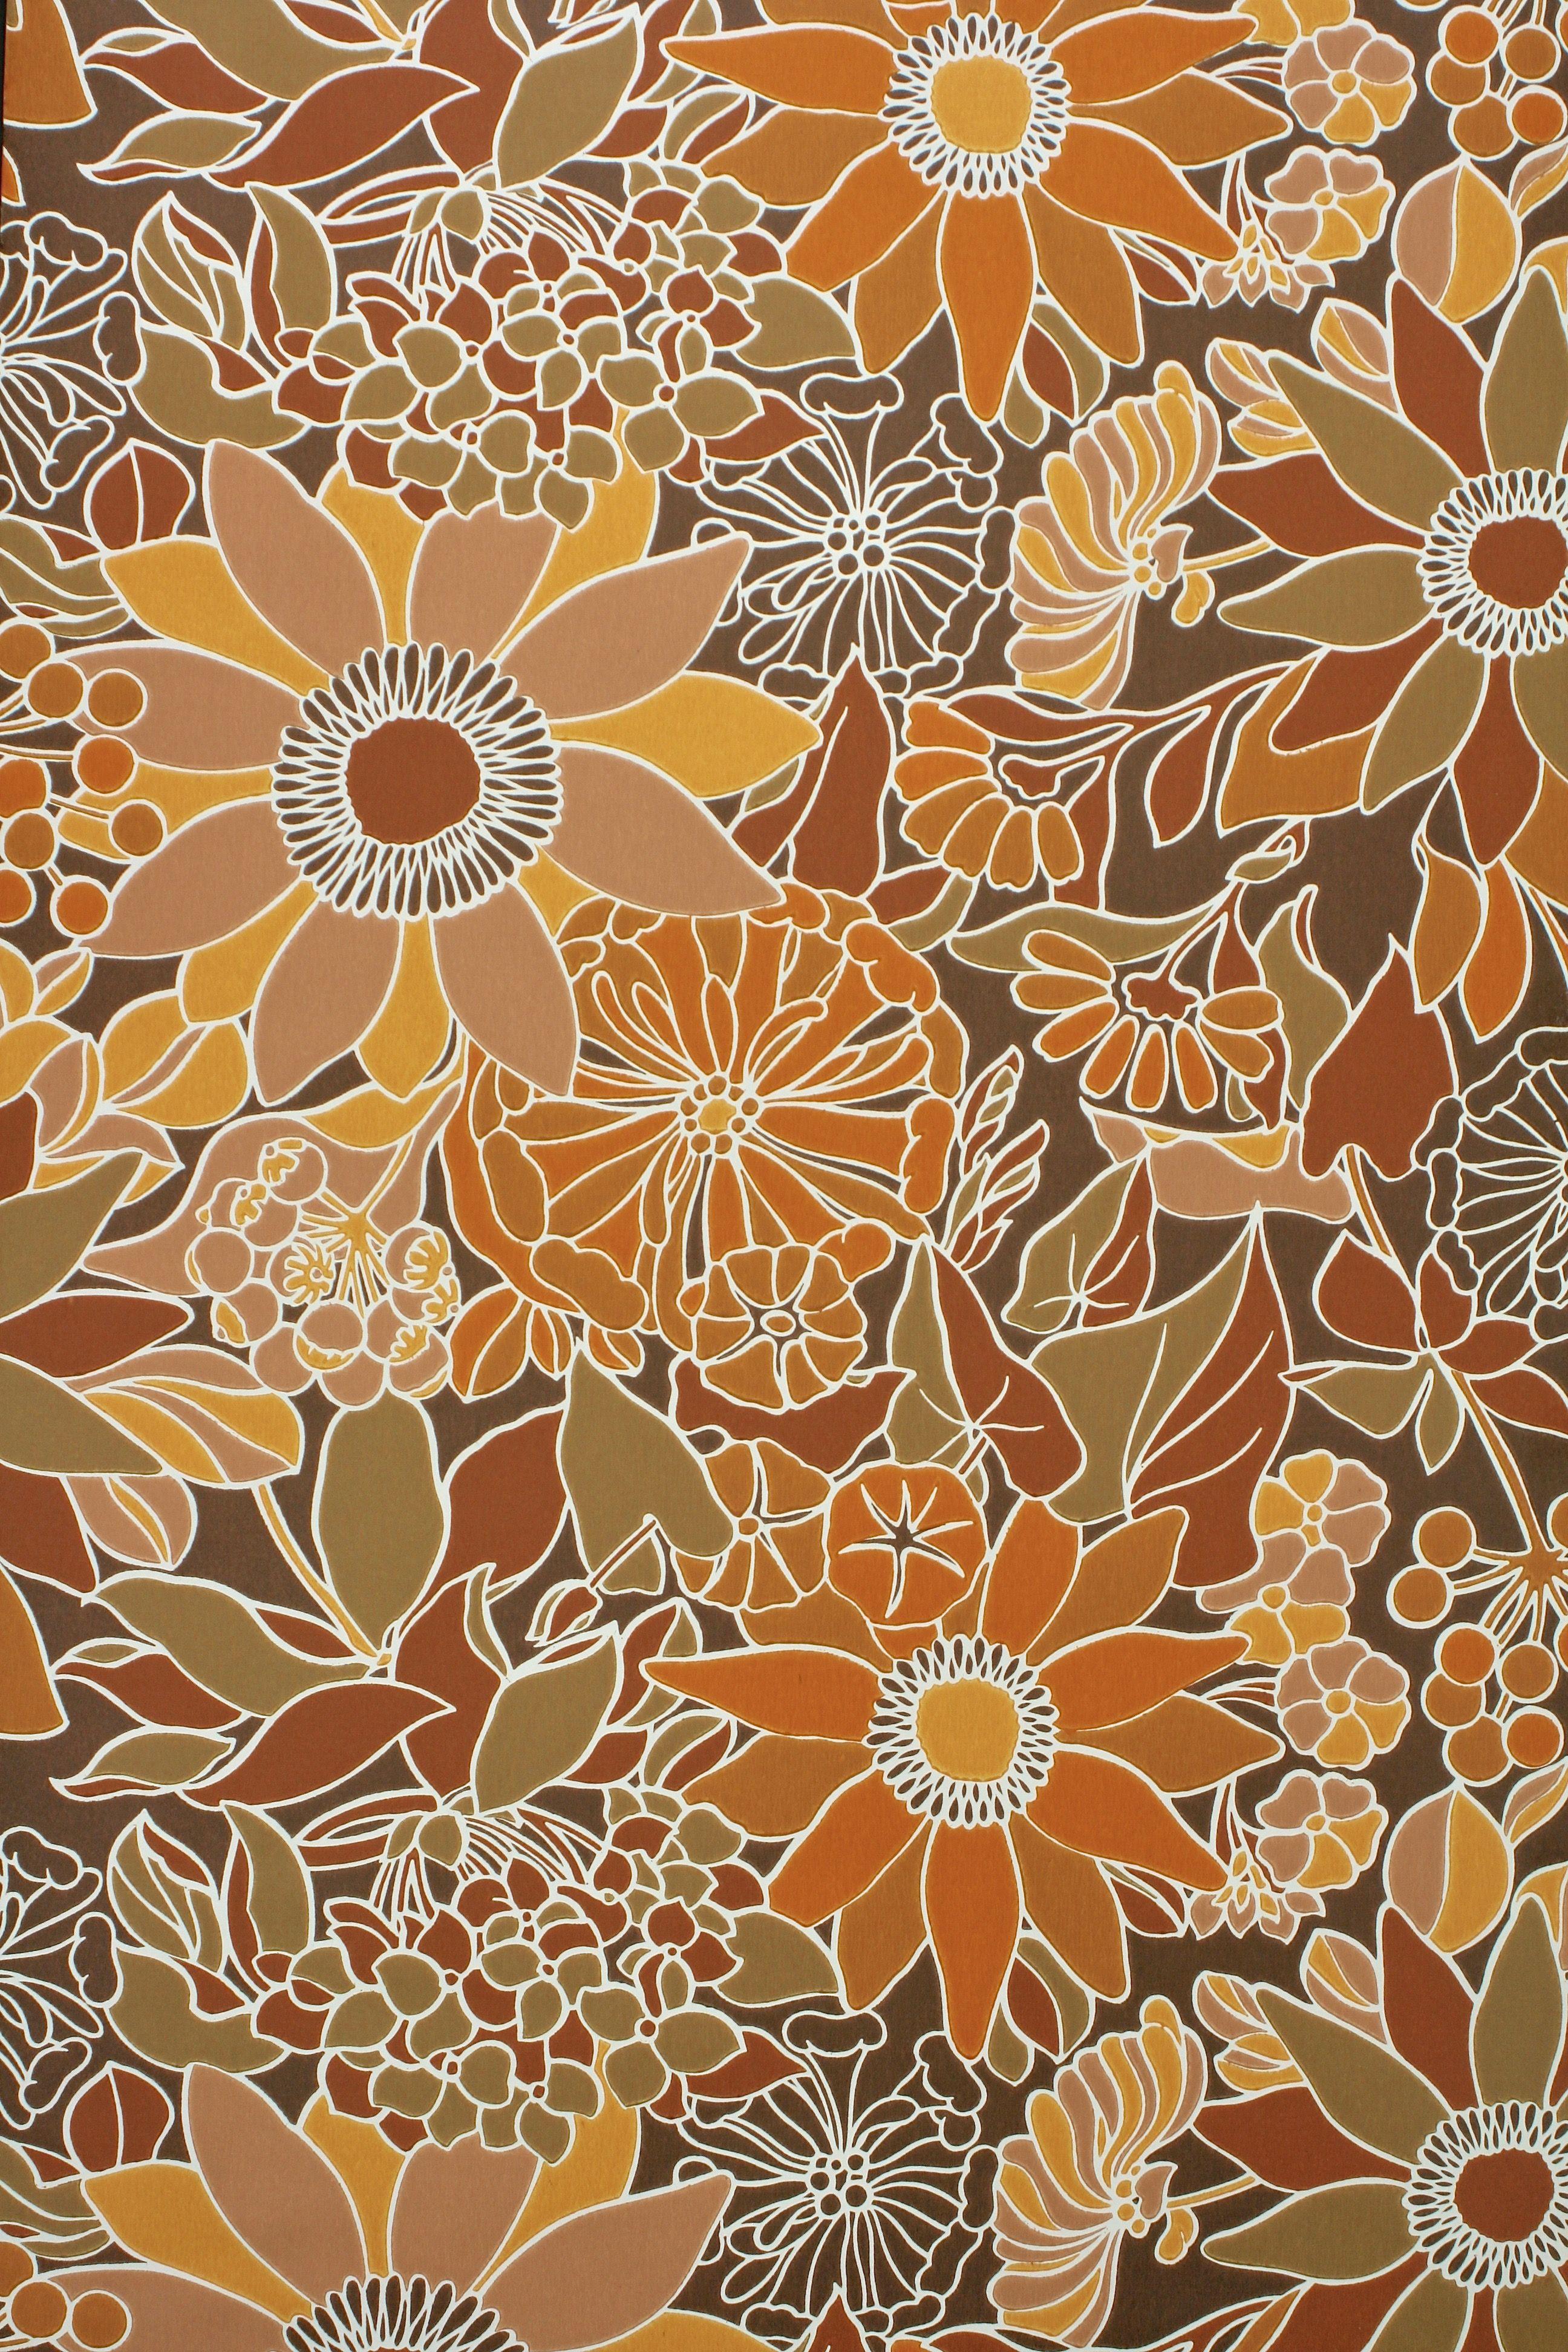 Vintage Floral Wallpapers - Top Free Vintage Floral Backgrounds